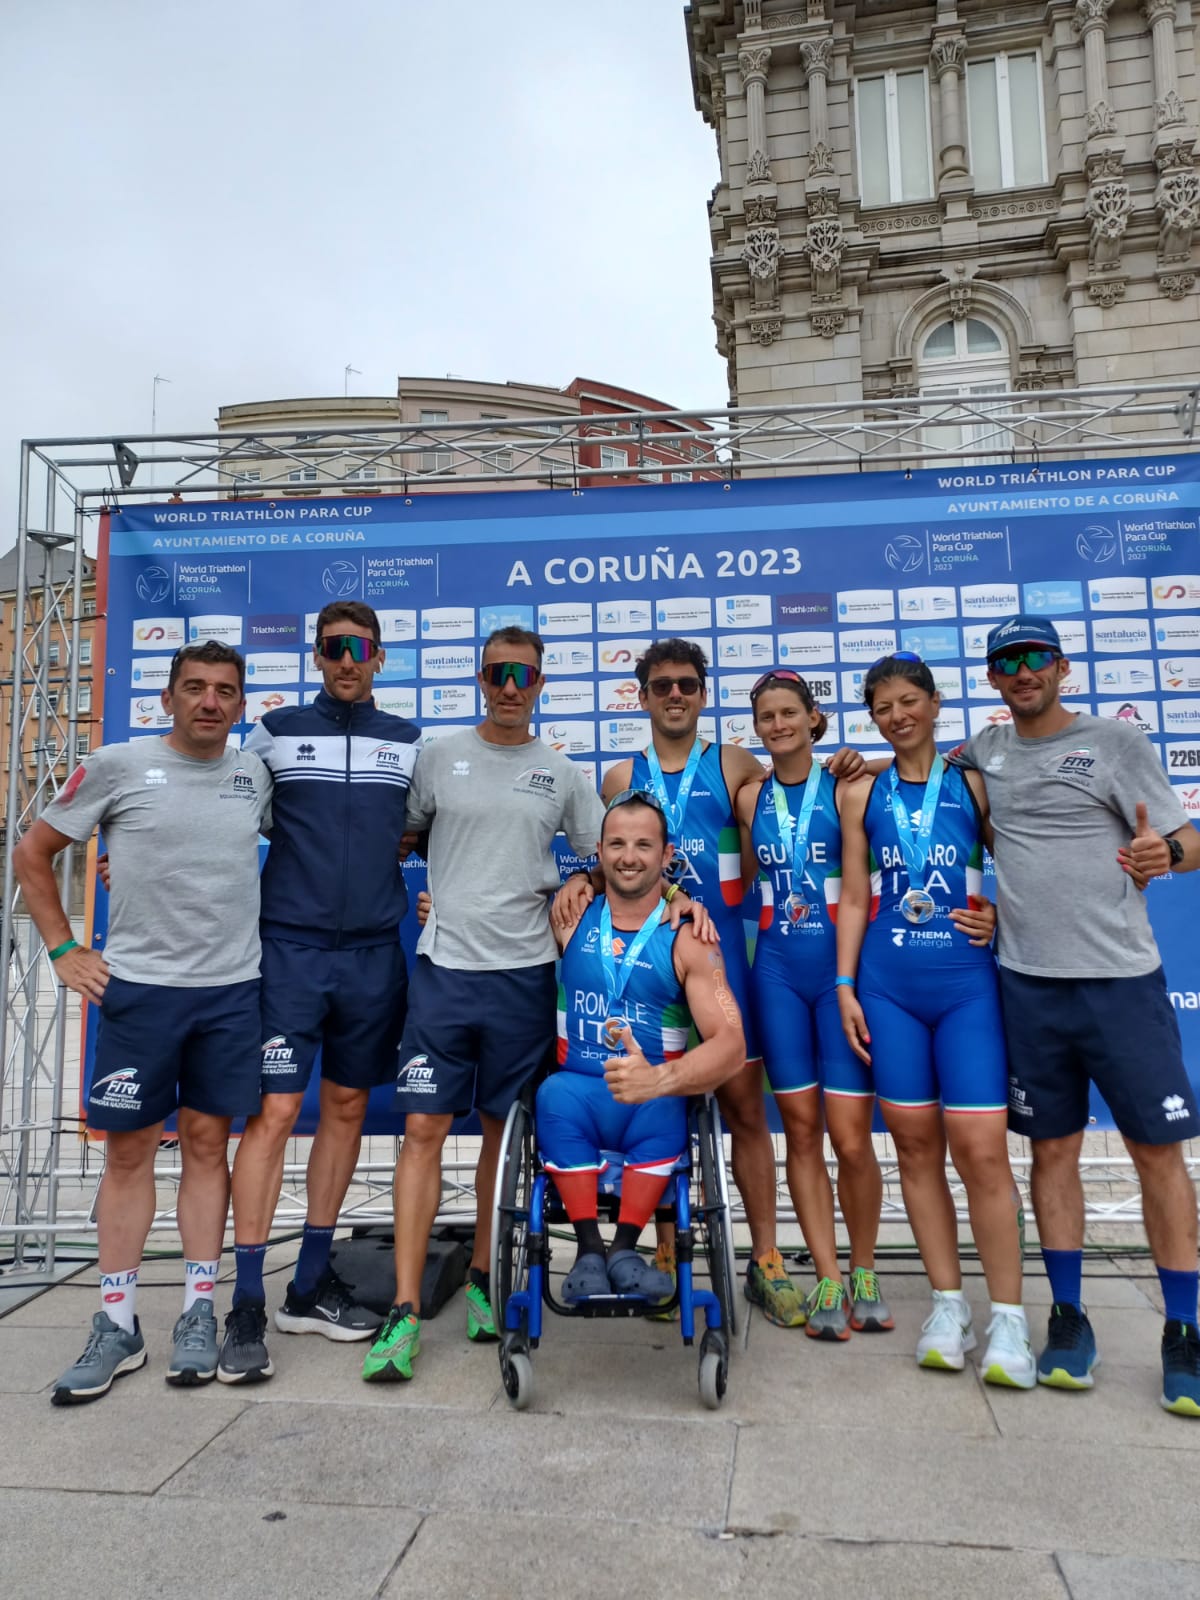 Tre medaglie dal Paratriathlon nella World Triathlon Para Cup A Coruna